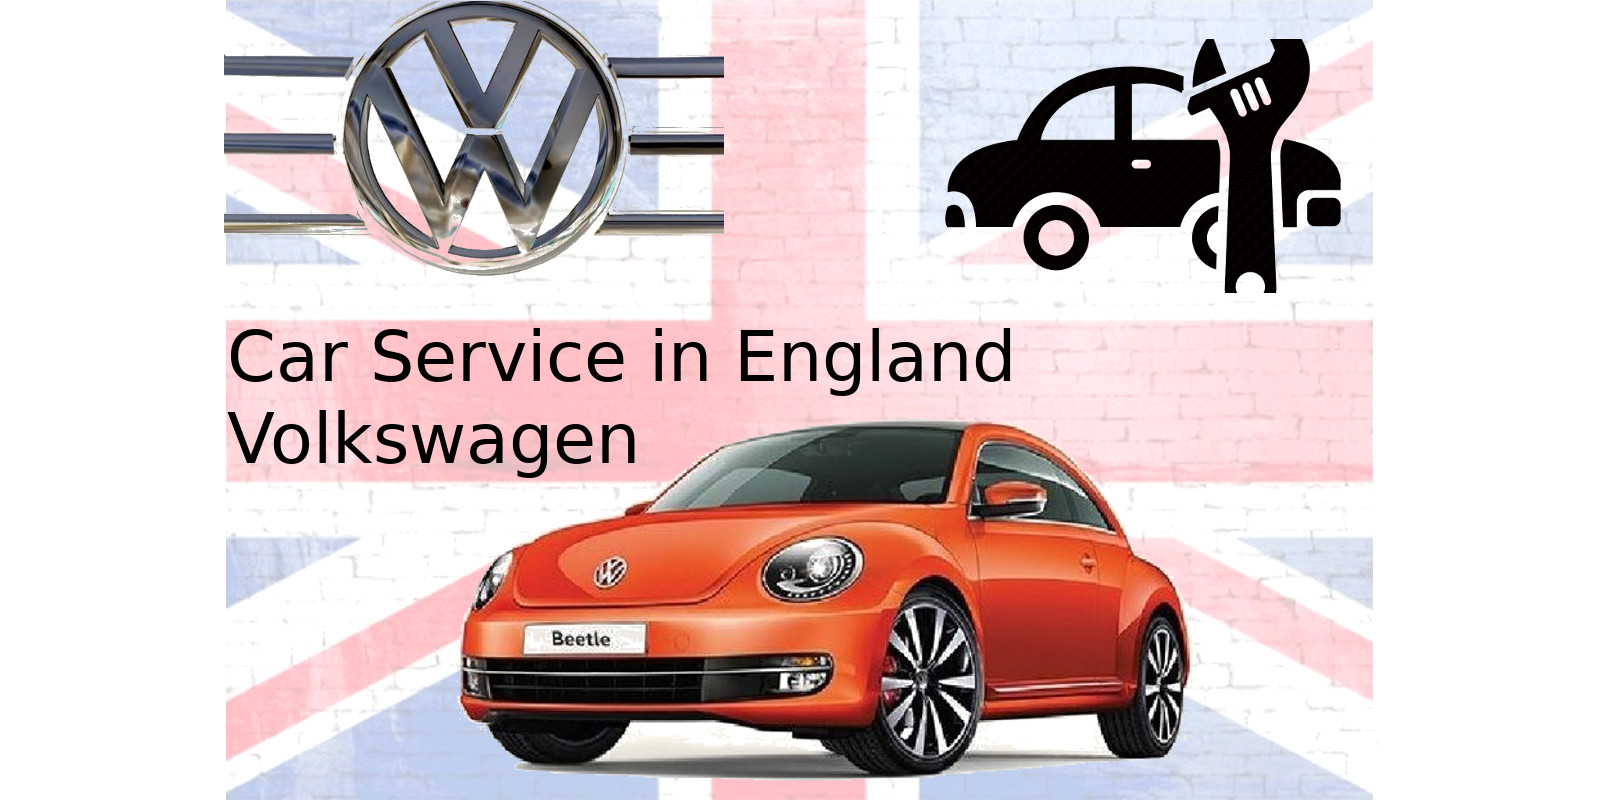 Volkswagen car service in UK